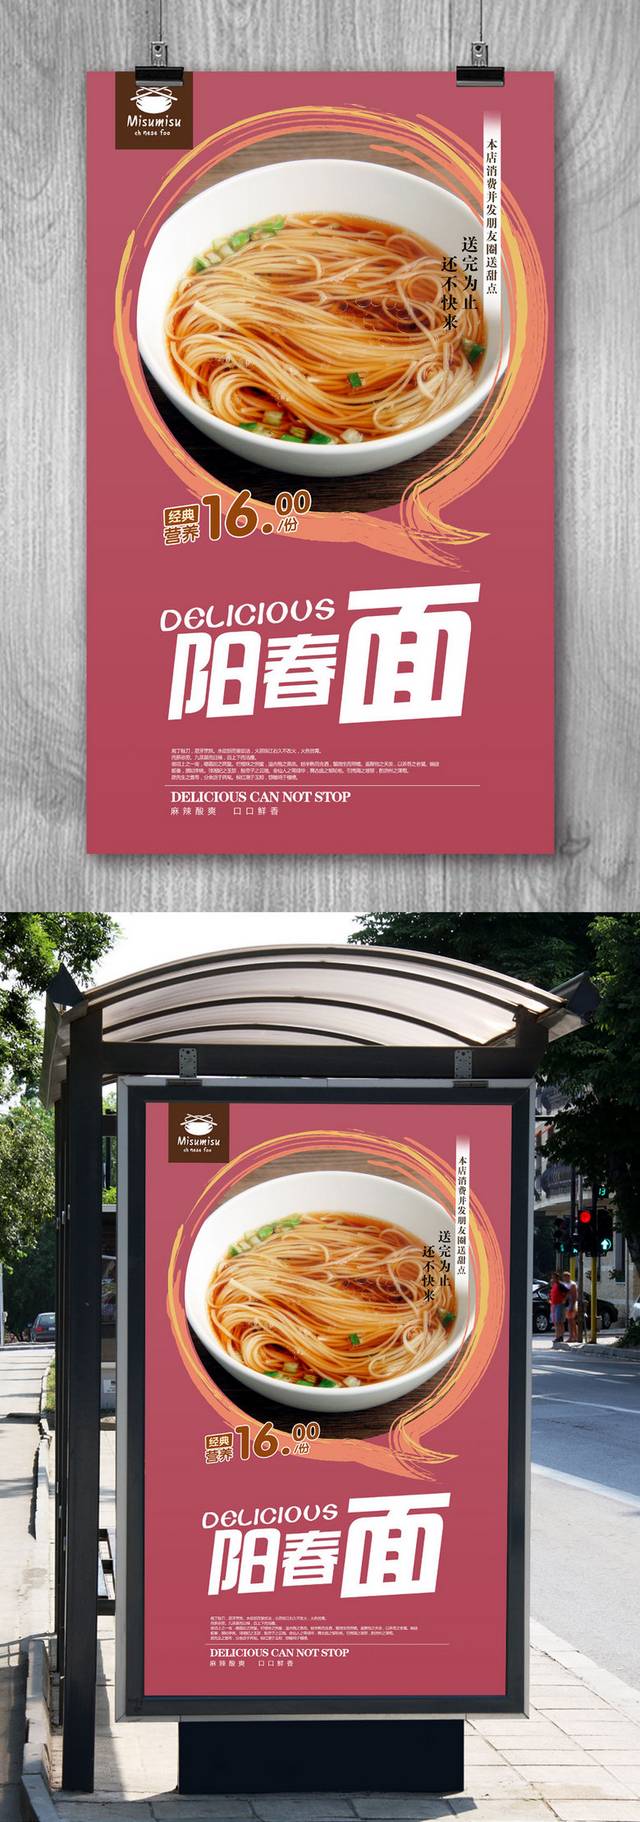 阳春面广告宣传海报设计